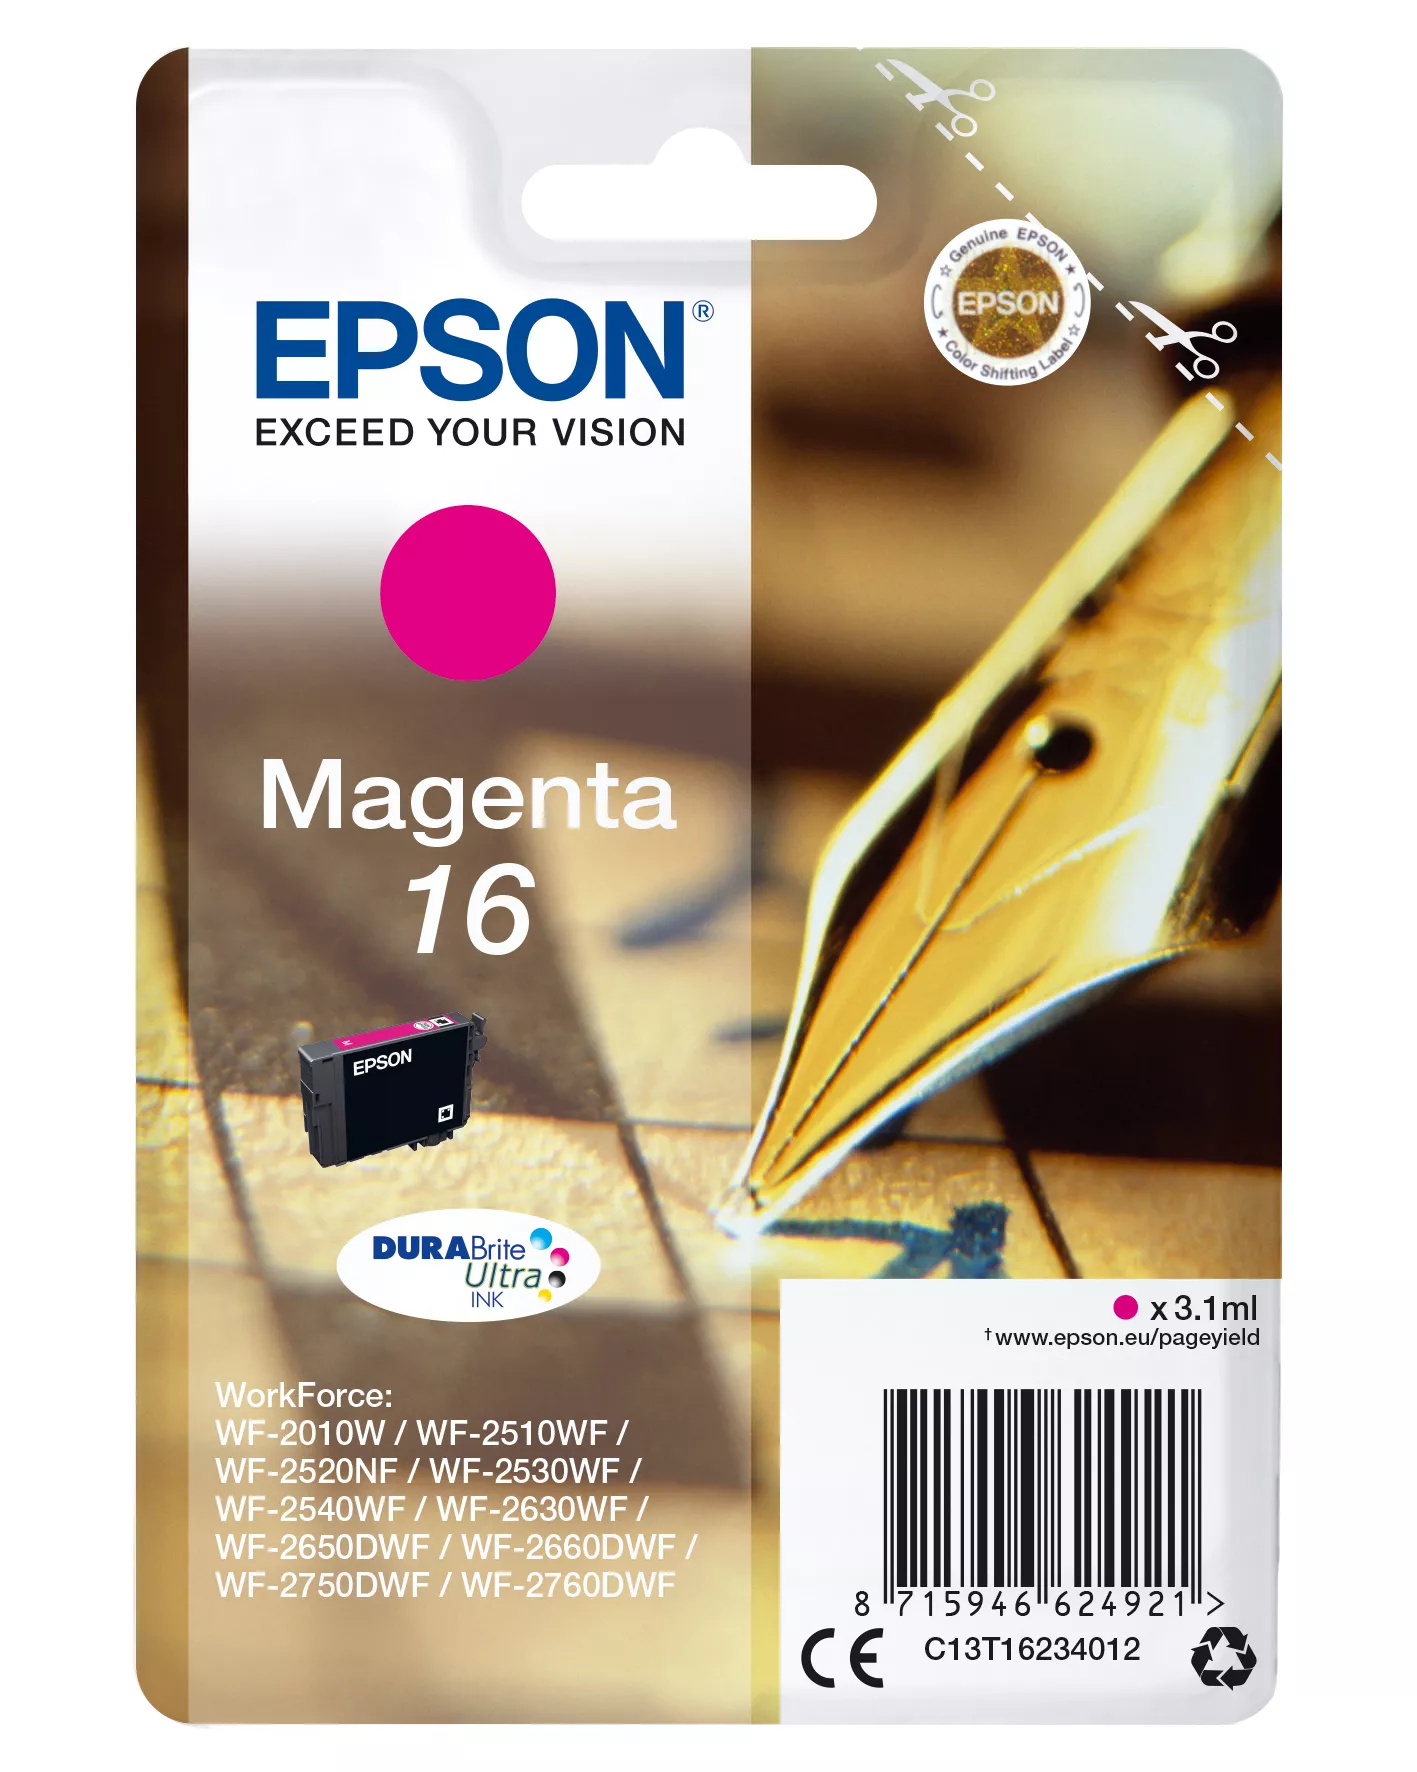 Achat EPSON 16 cartouche encre magenta capacité standard 3.1ml au meilleur prix